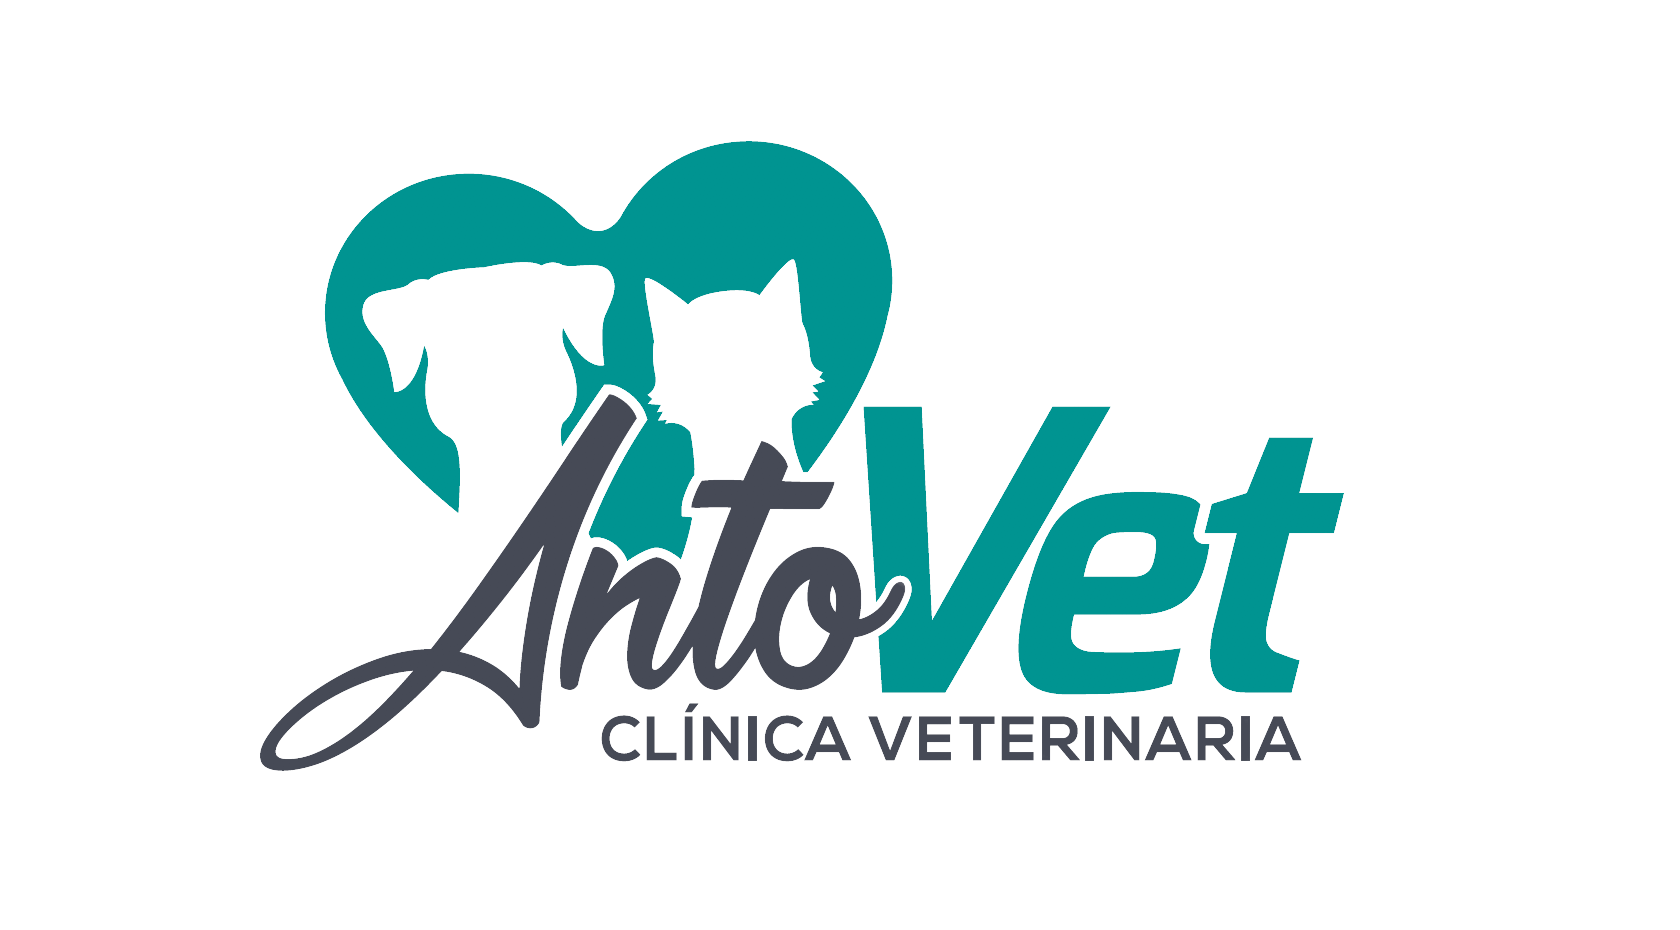 Antovet Clínica Veterinaria